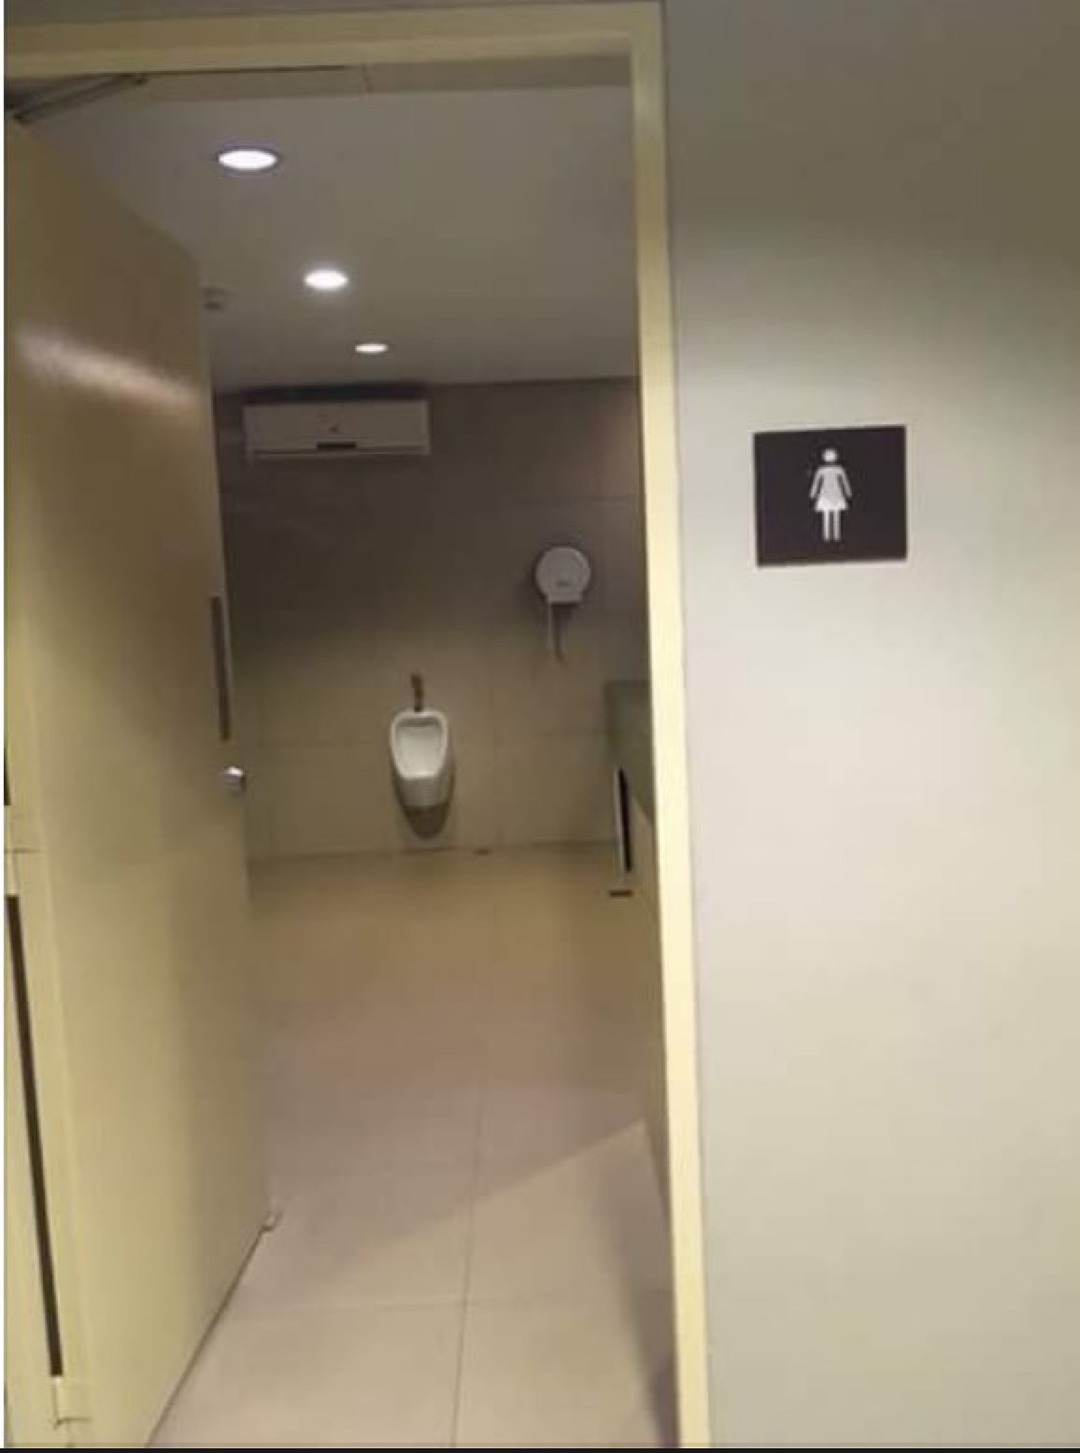 les toilettes en Thaïlande - meme